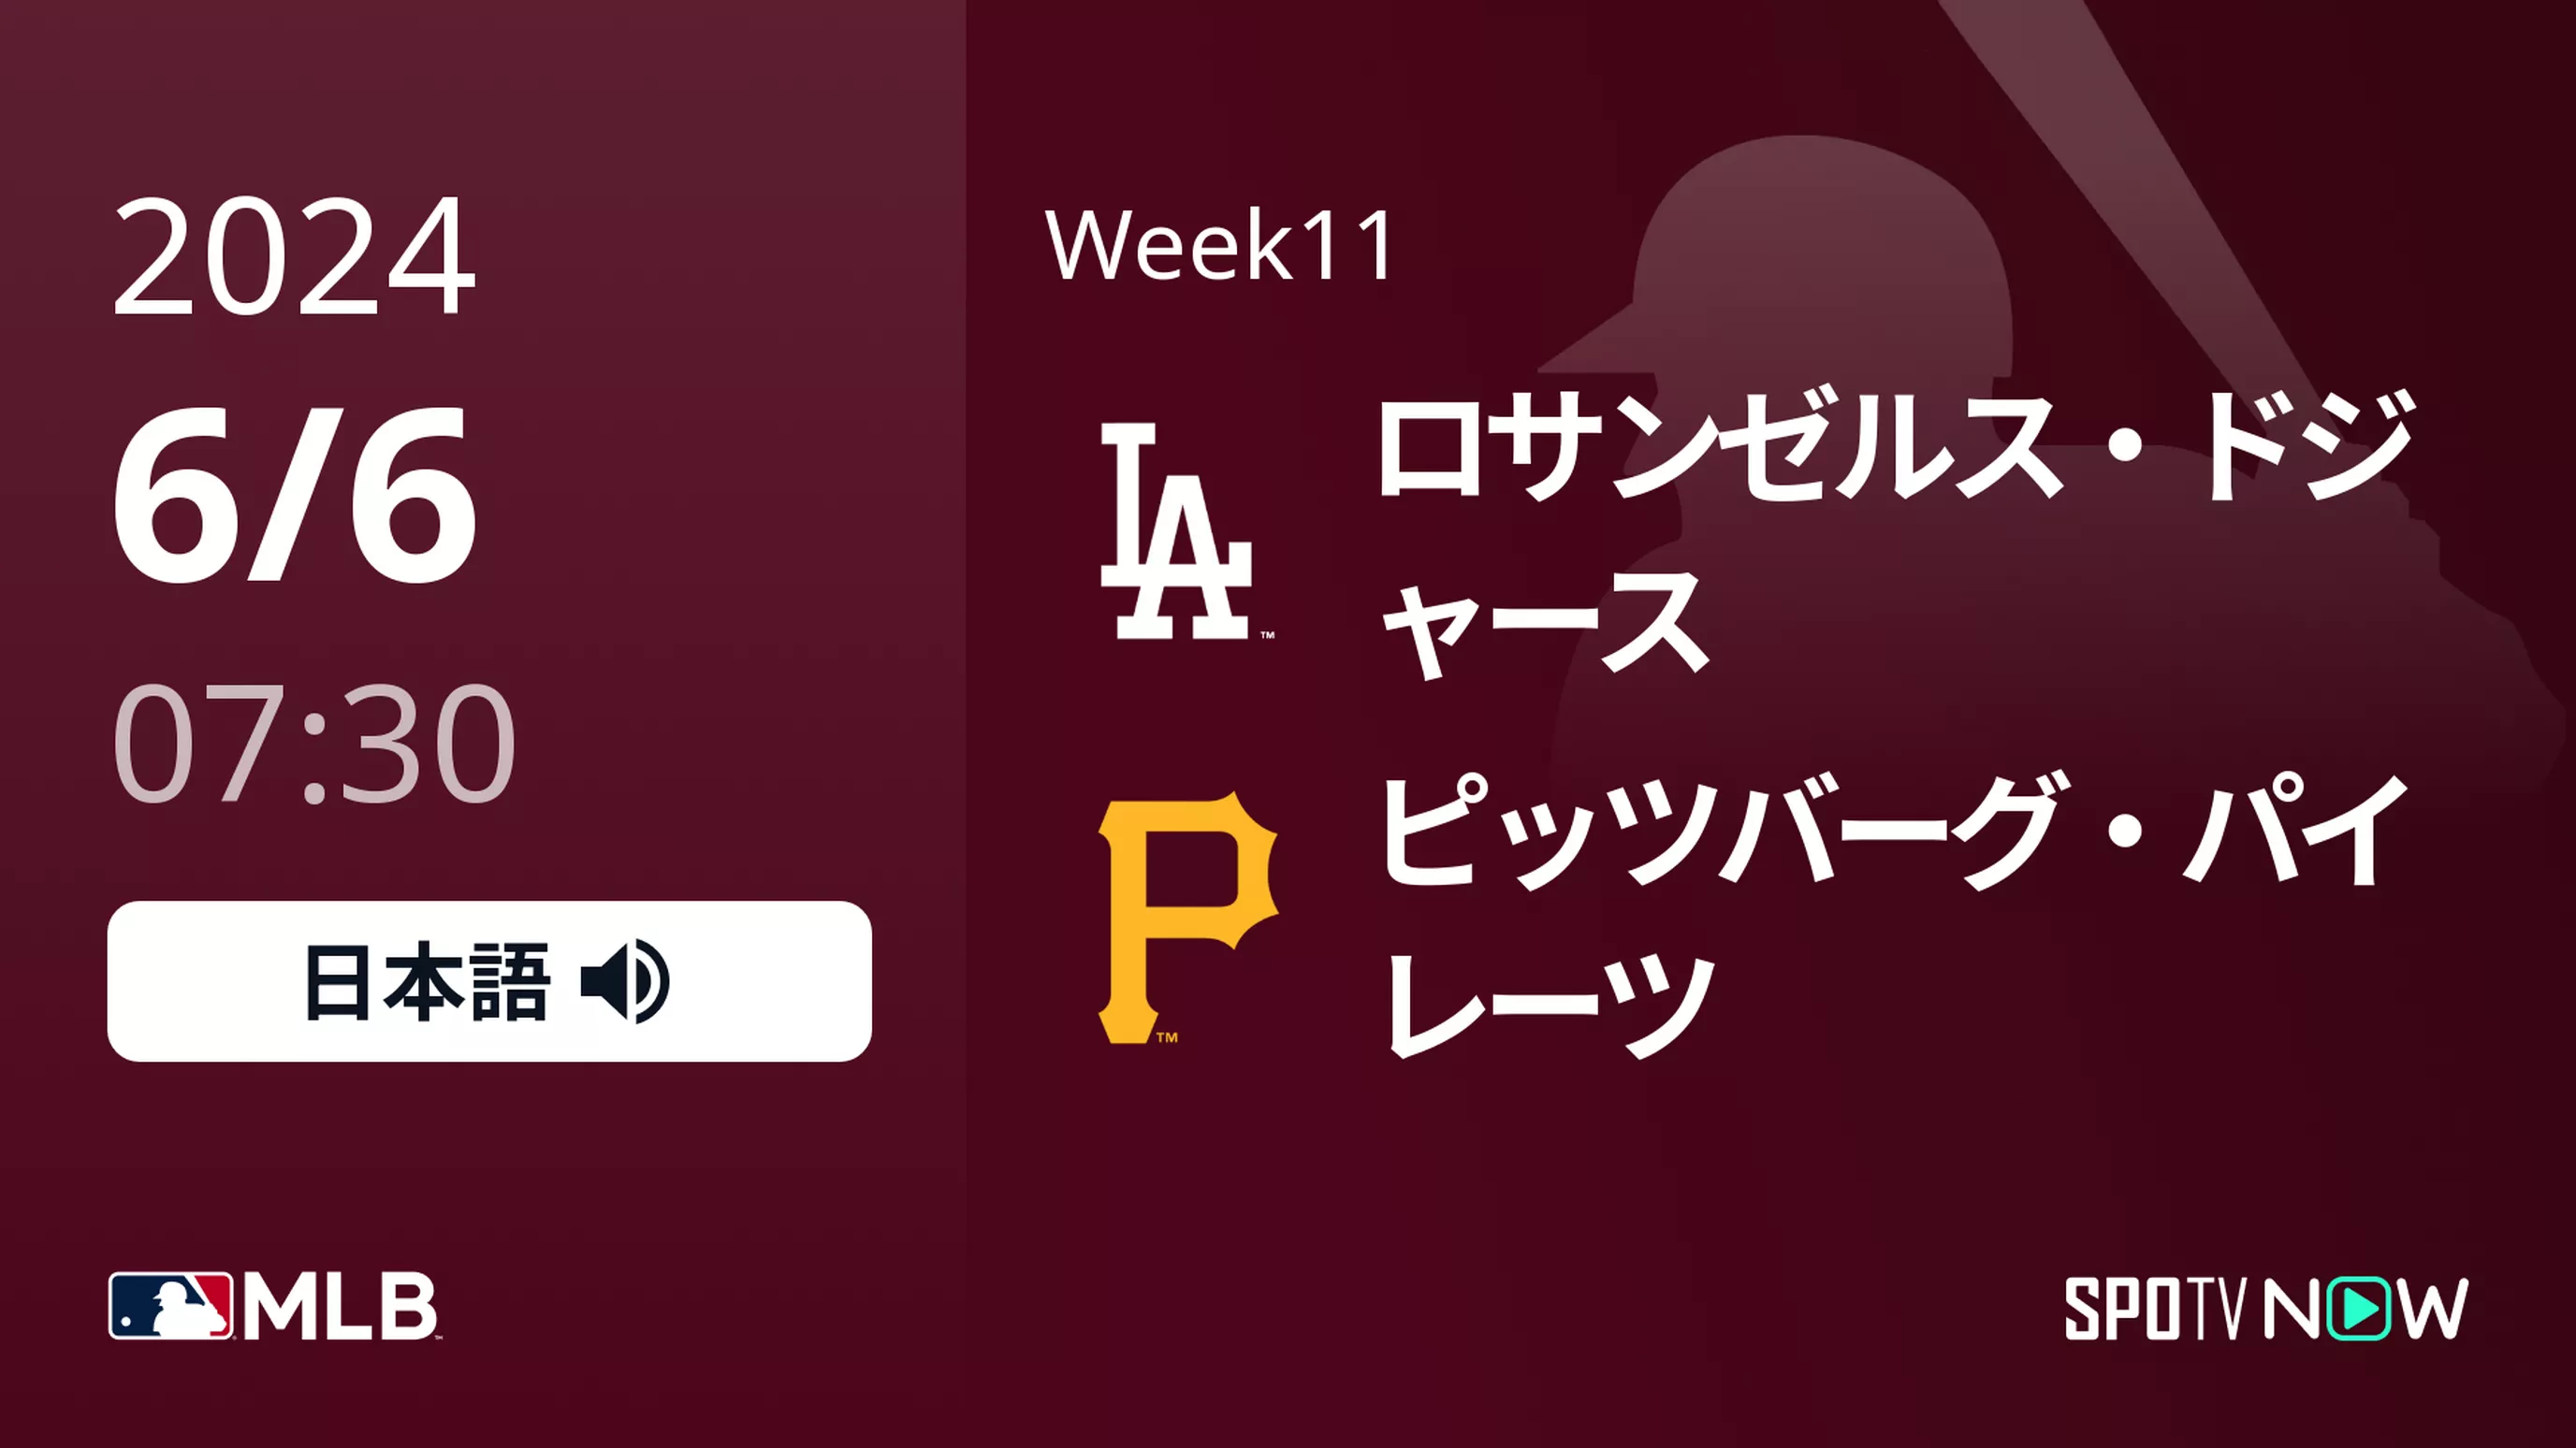 Week11 ドジャース vs パイレーツ 6/6[MLB]